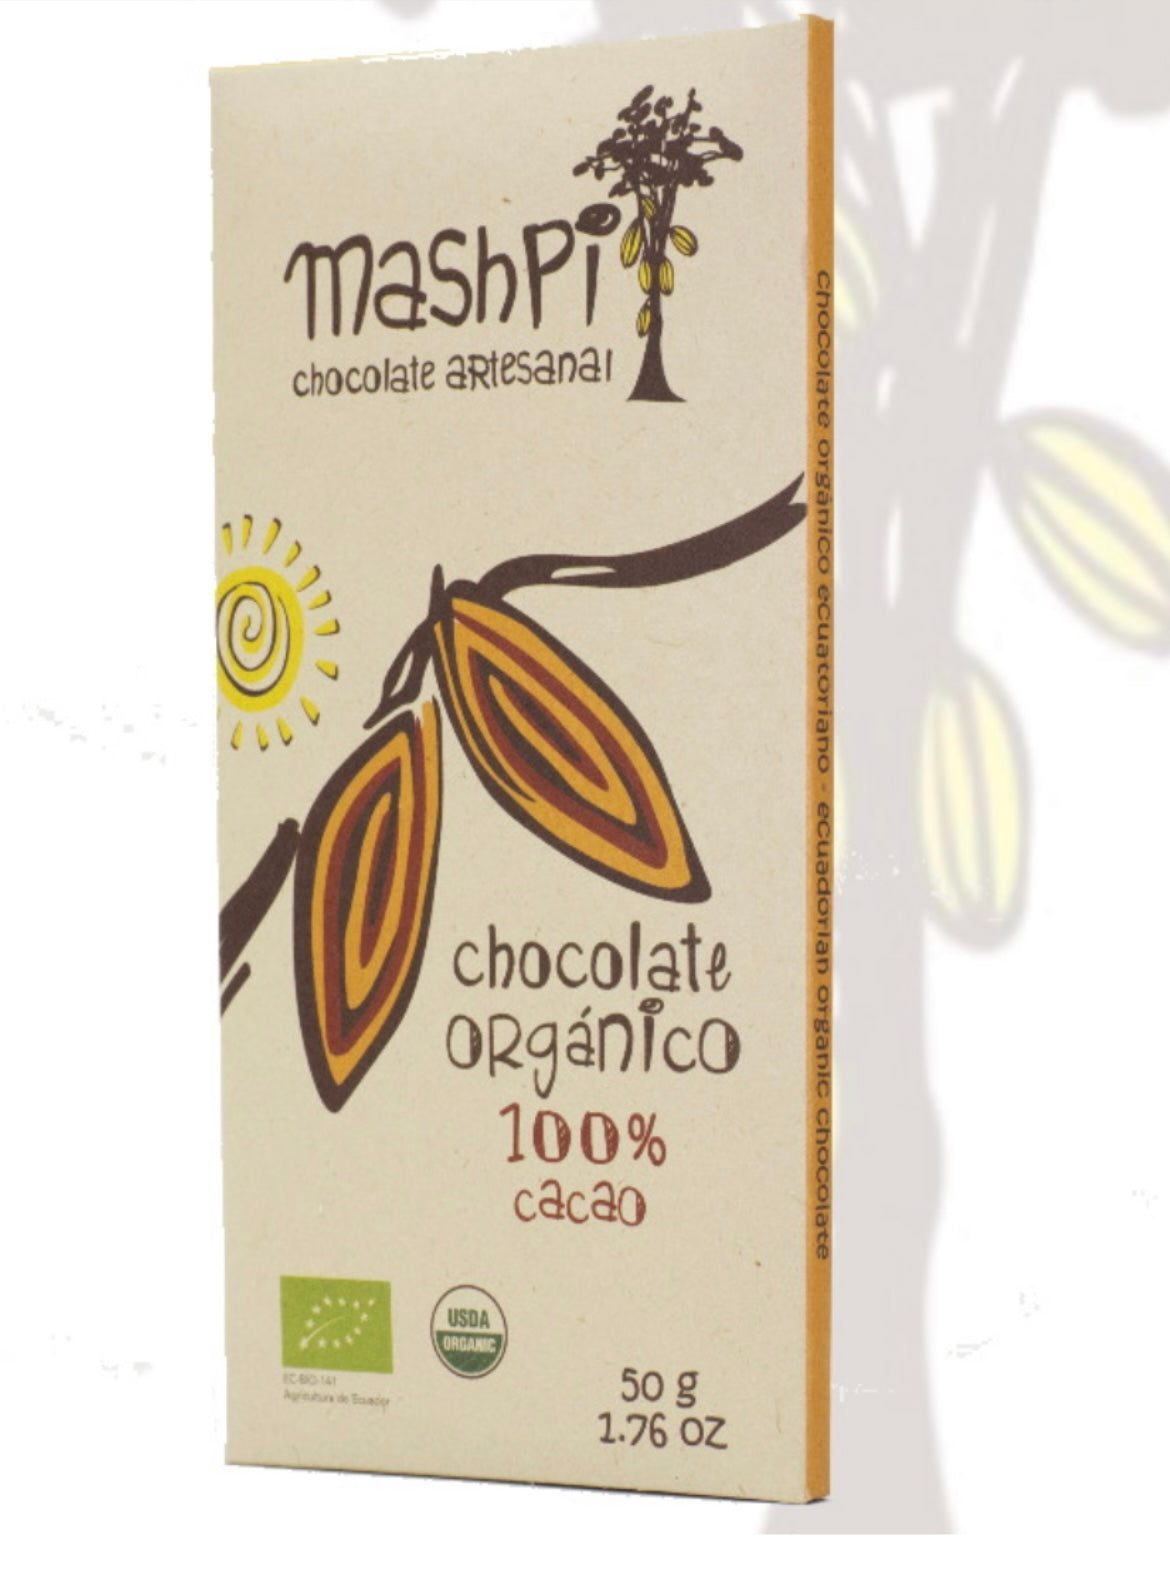 Mashpi 100% chocolate bar, Ecuador